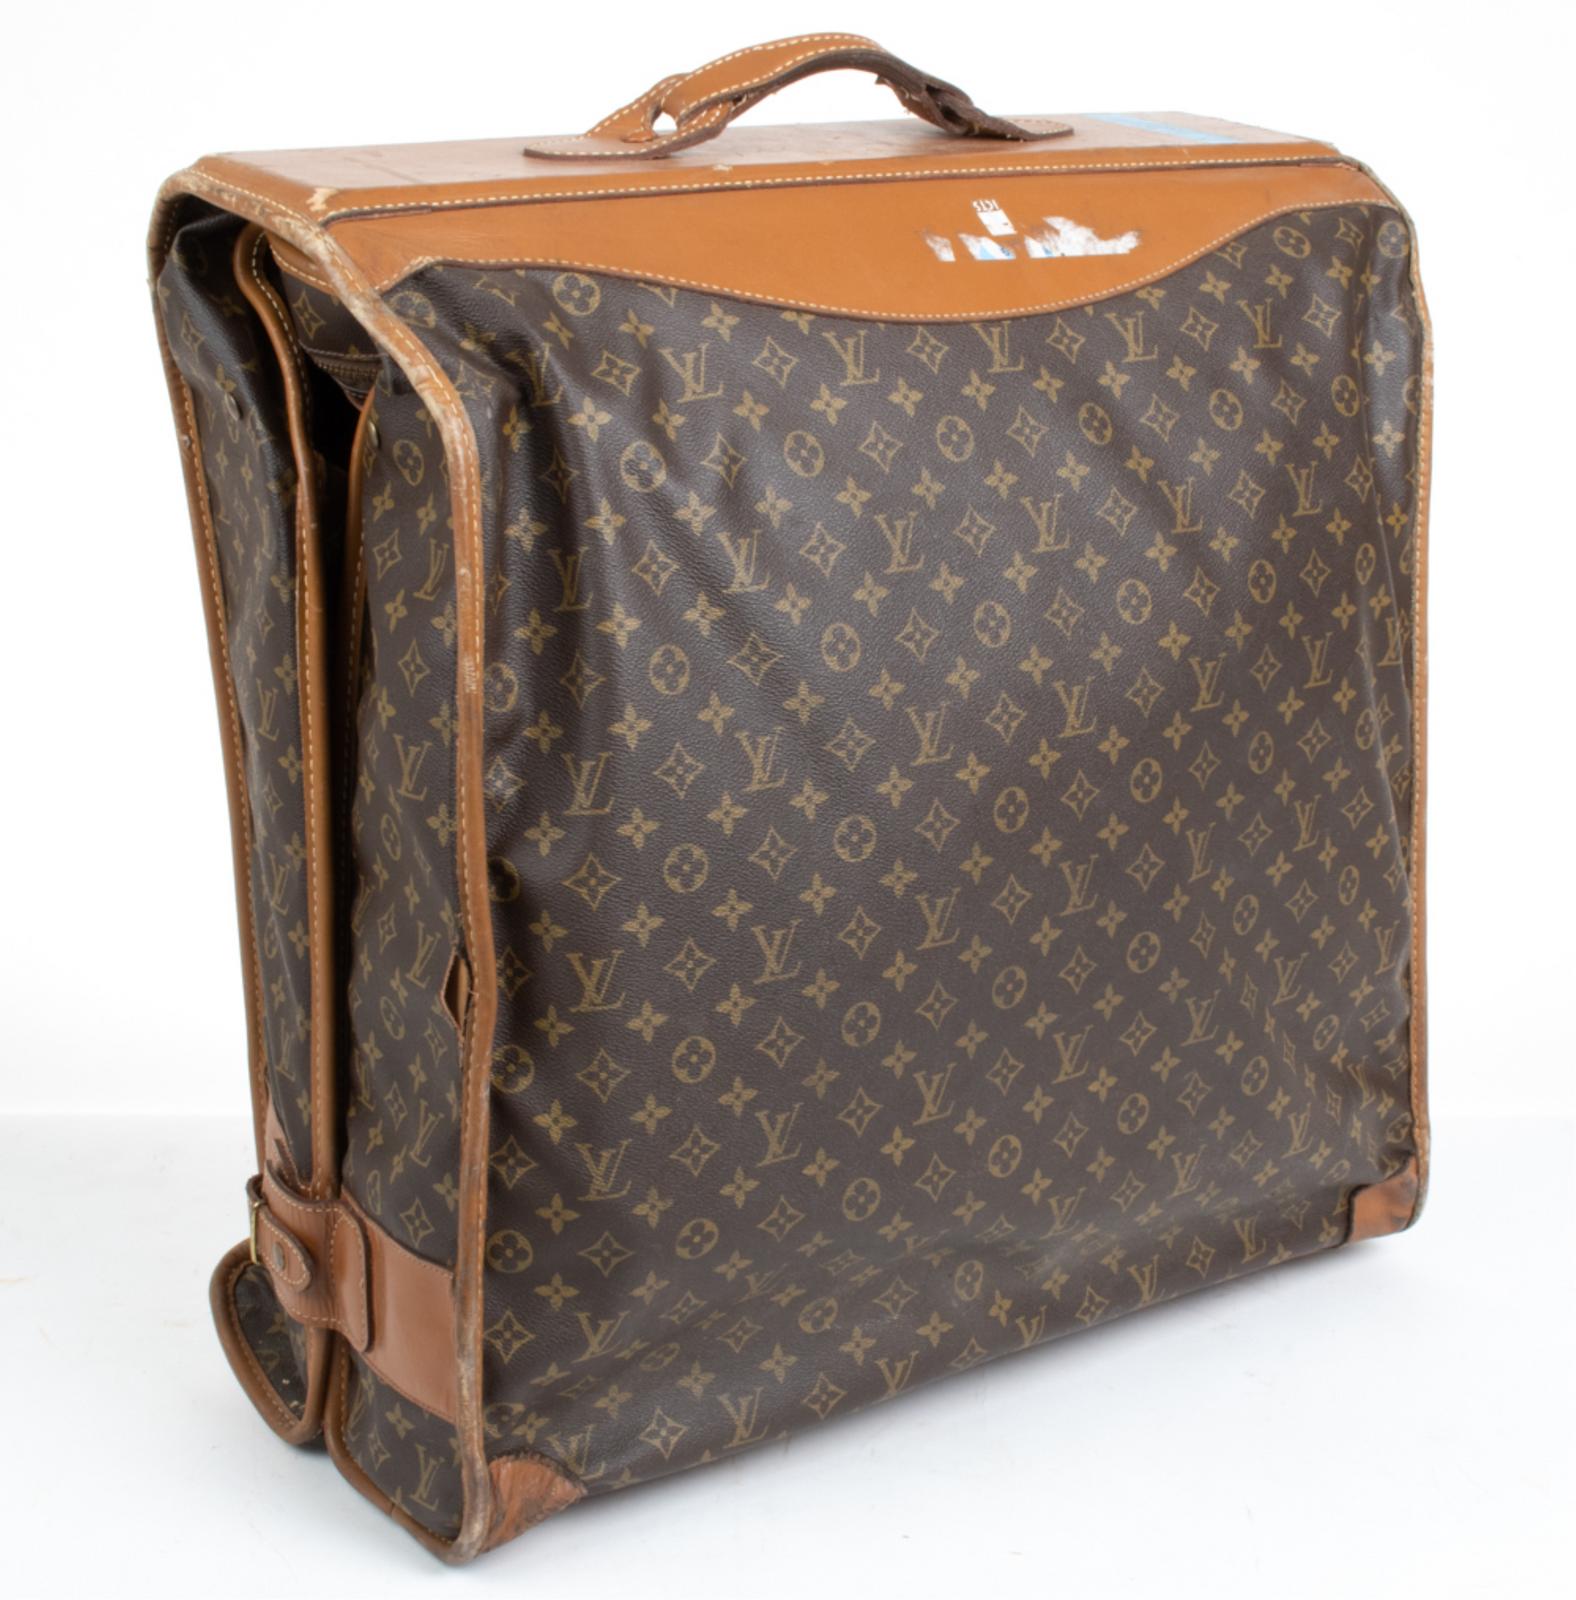 Sold at Auction: Vintage Louis Vuitton Travel Bag